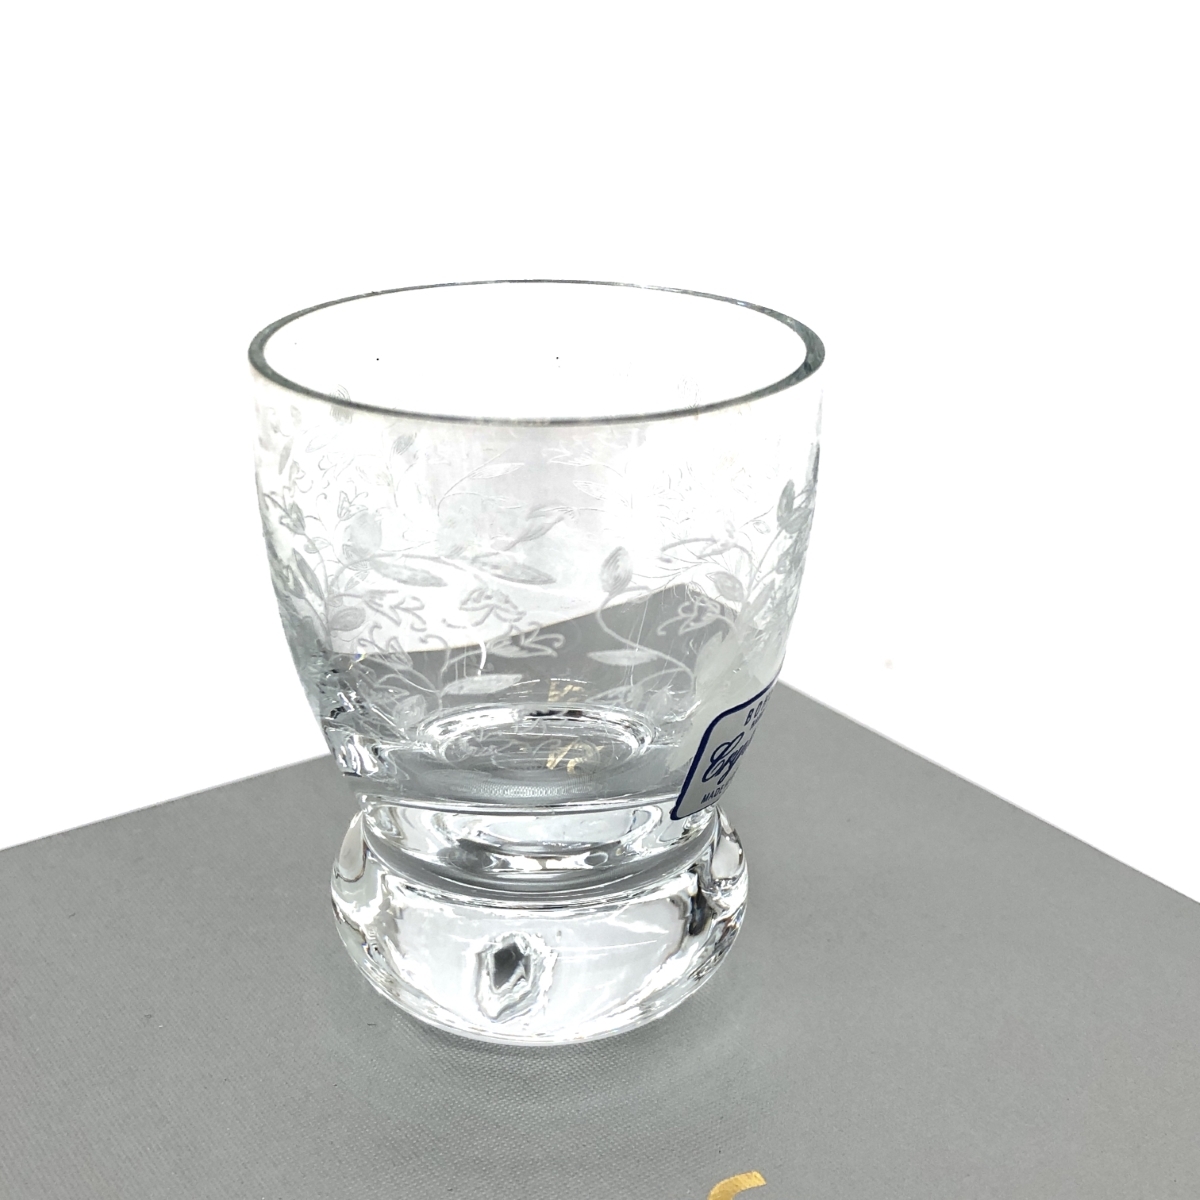 新品同様◆BOHEMIA ボヘミア 酒杯◆5客セット 箱付 クリア クリスタル ガラス食器_画像7